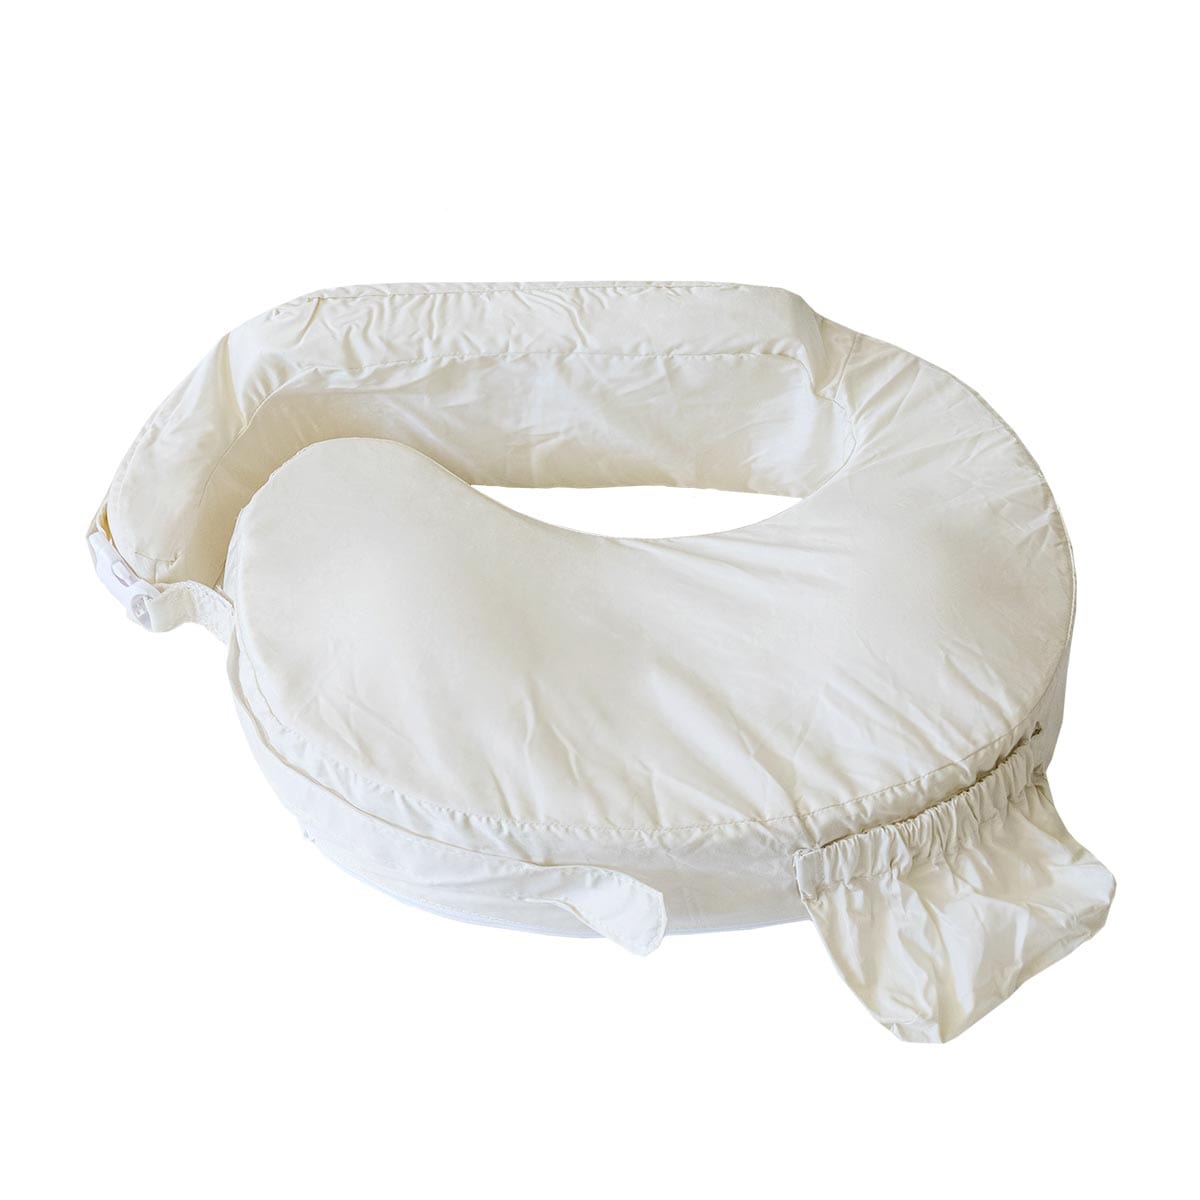 Nursing pillows not safe for sleeping infants - Mary Bridge Children's